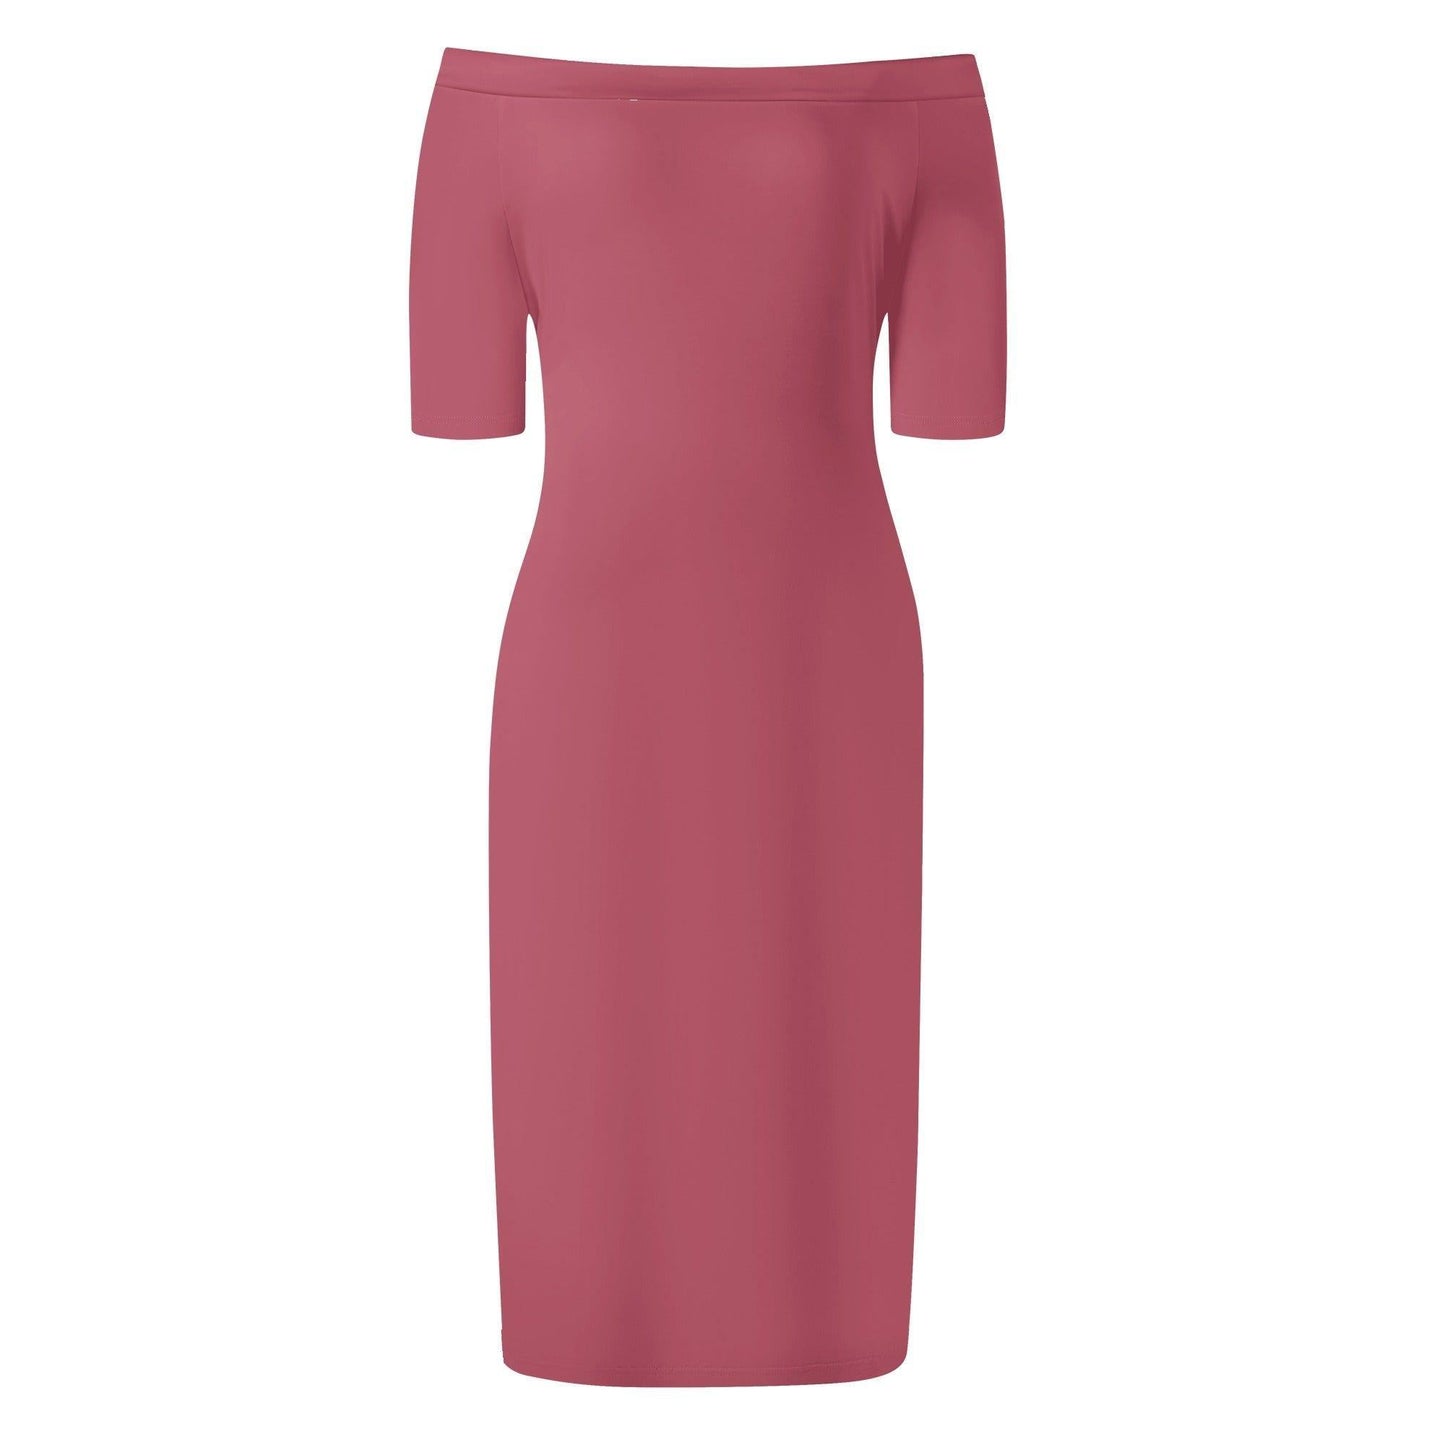 Hippie Pink Off-Shoulder-Kleid -- Hippie Pink Off-Shoulder-Kleid - undefined Off-Shoulder-Kleid | JLR Design